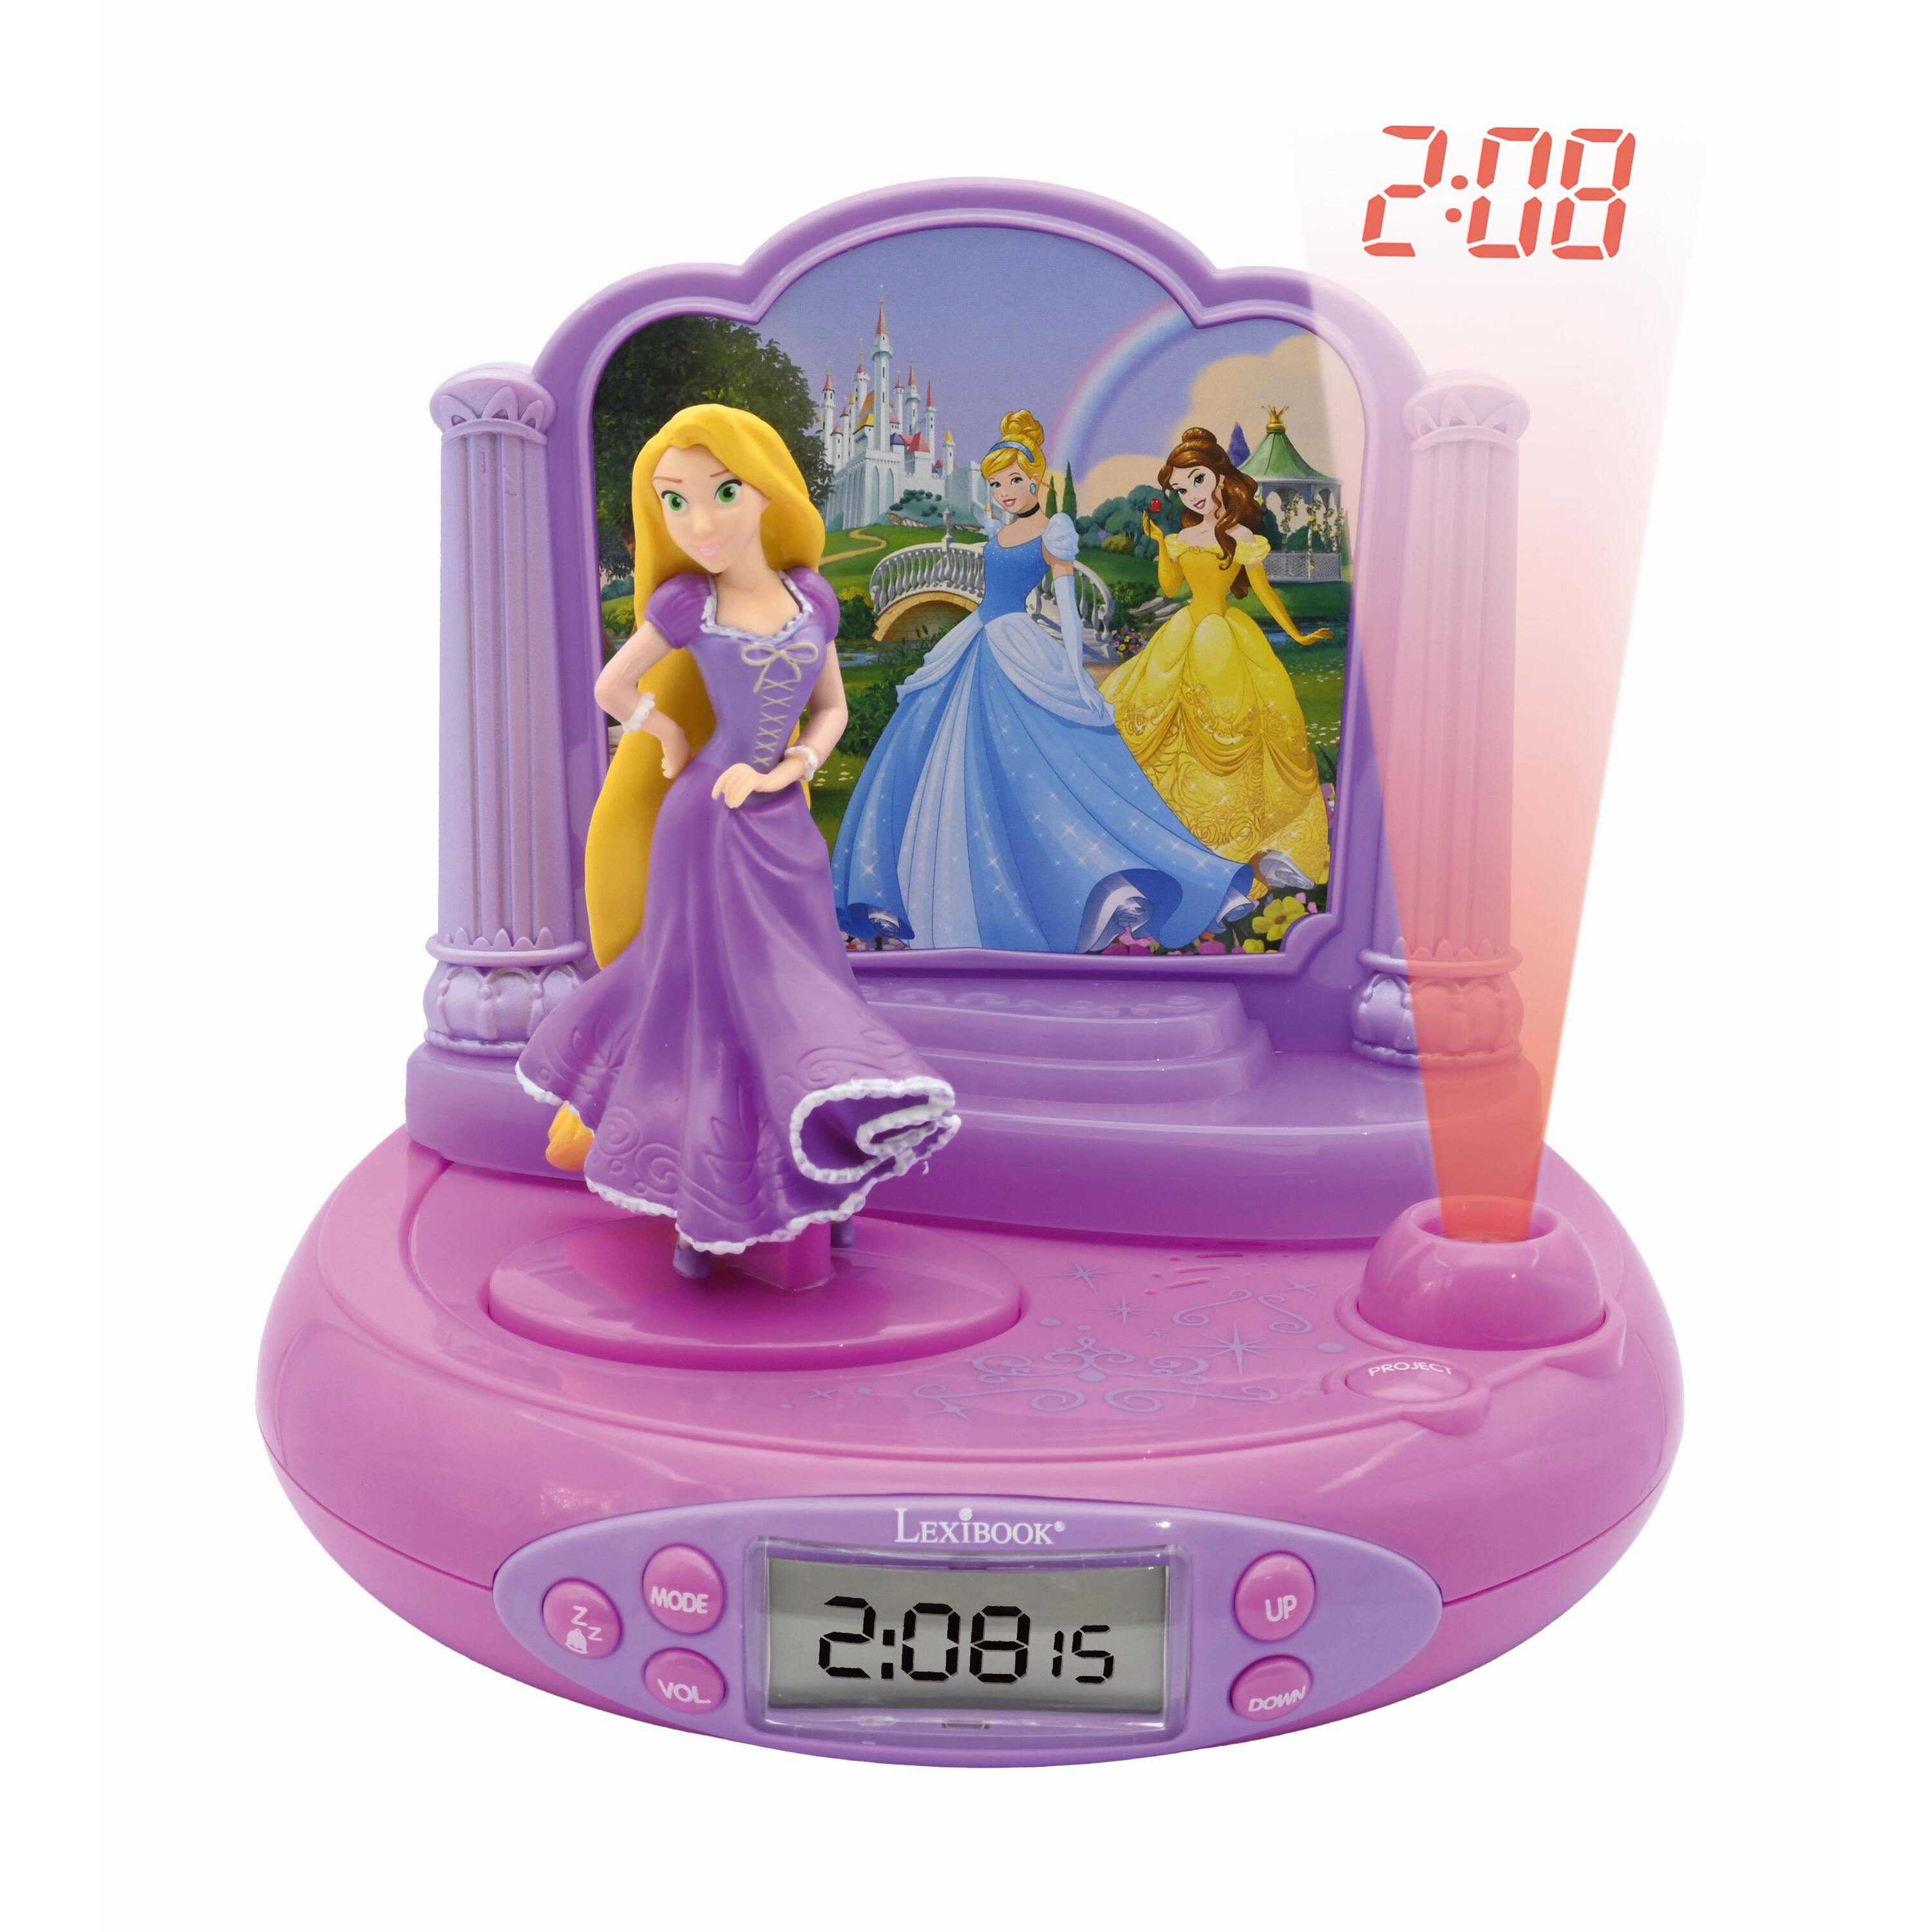 réveil projecteur disney princesses raiponce en 3d et sons magiques lexibook